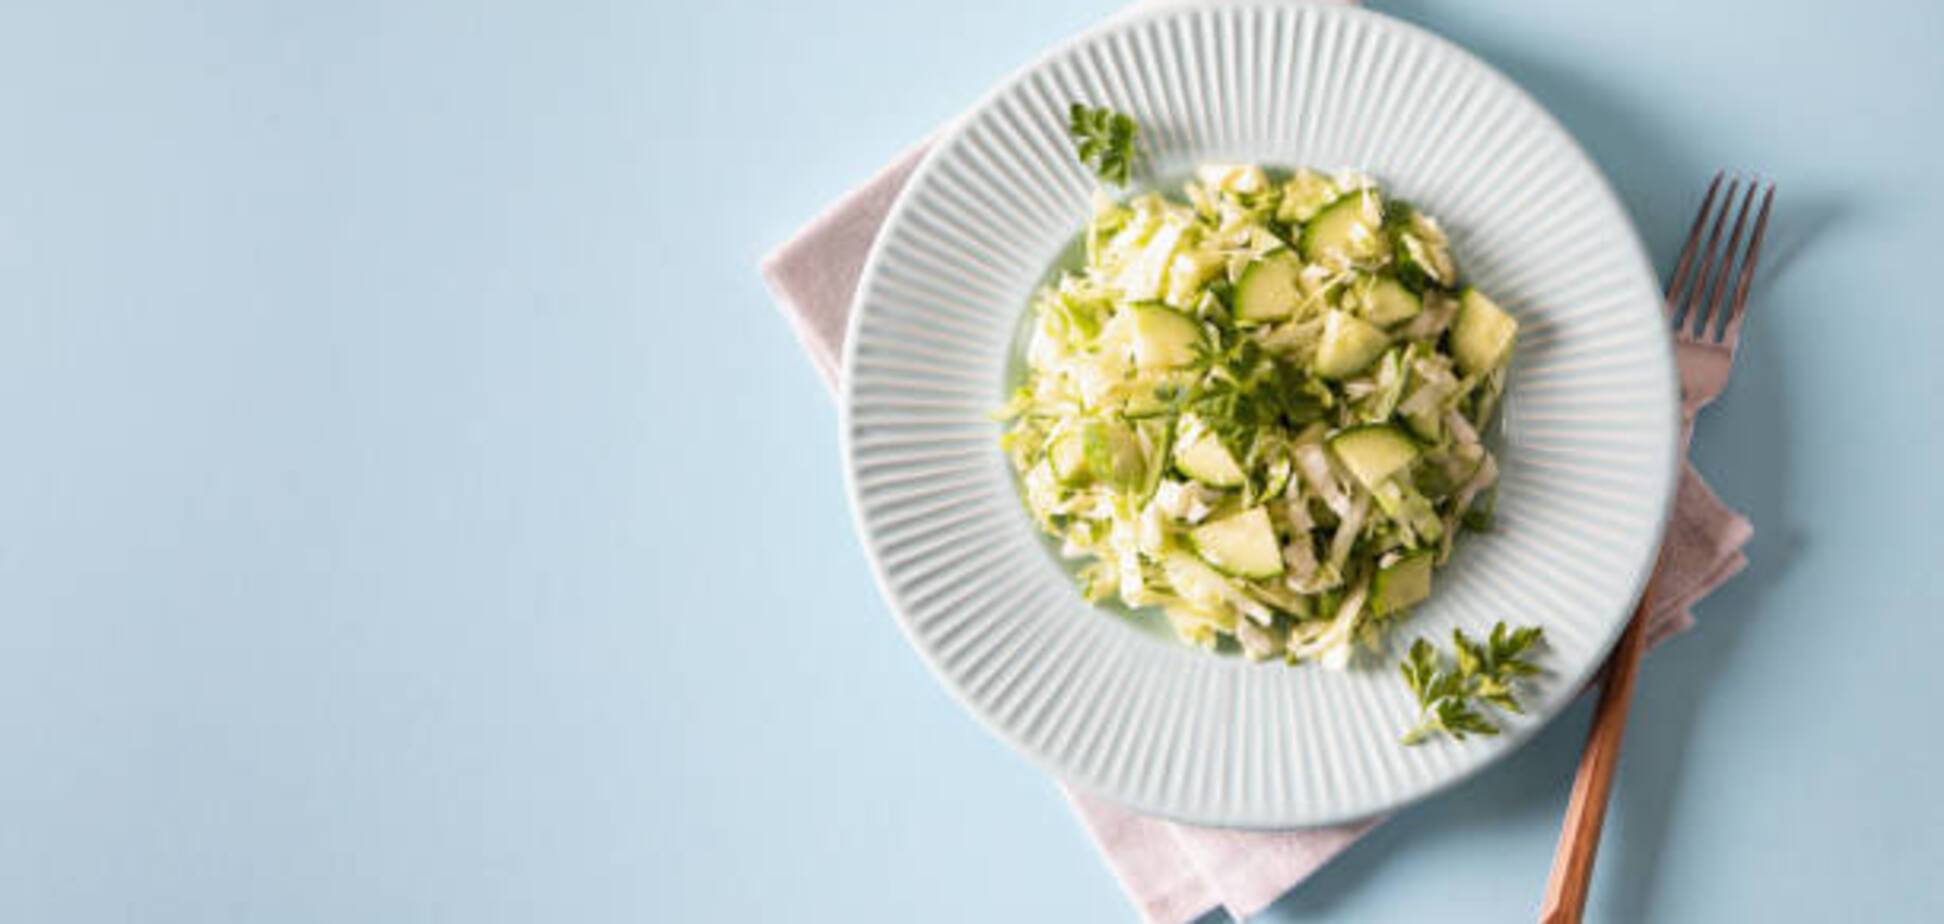 Салат из капусты по-новому: как приготовить заправку из вареных желтков